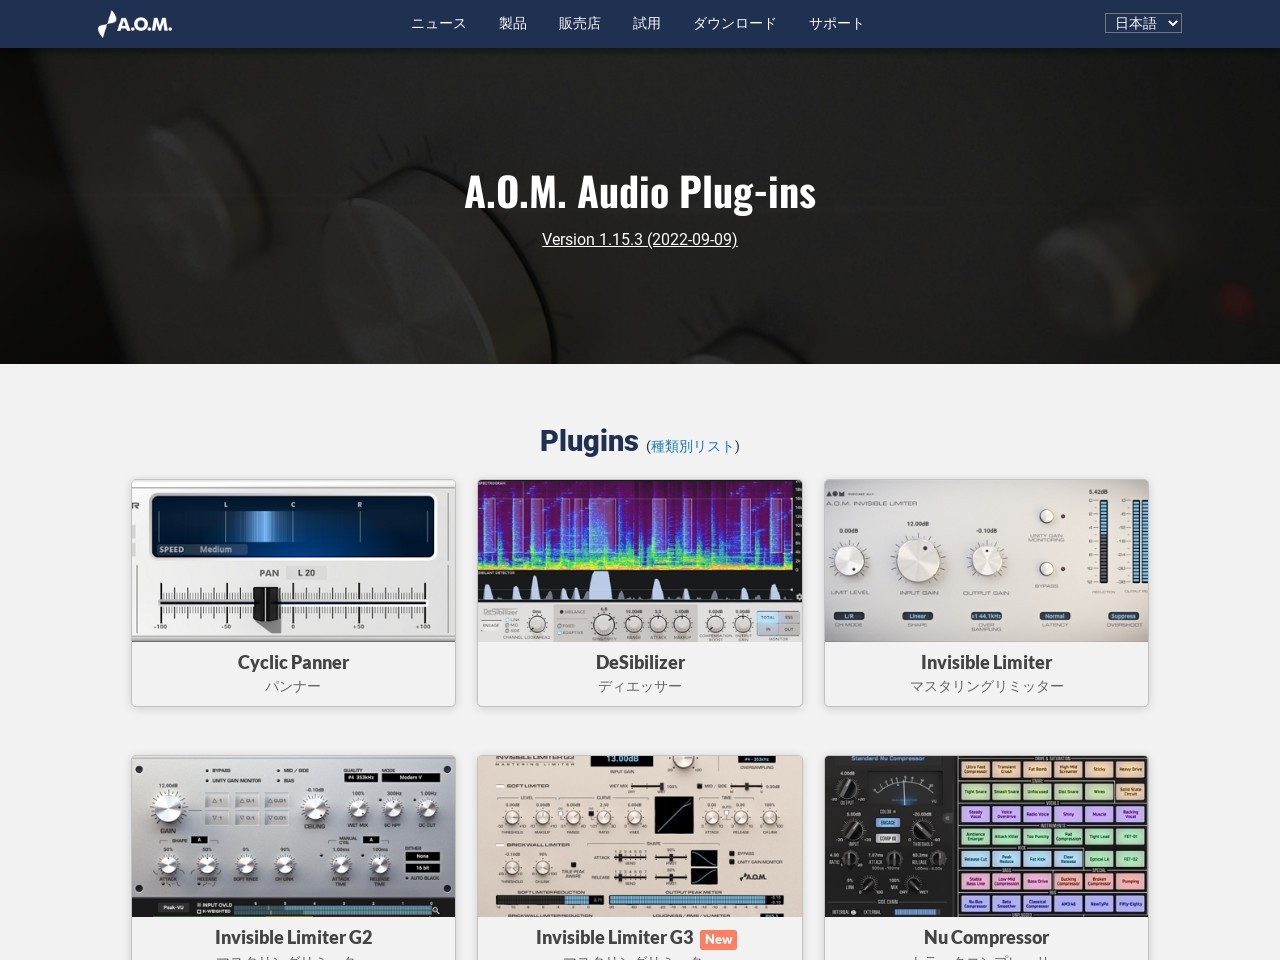 A.O.M. Audio Plug-ins